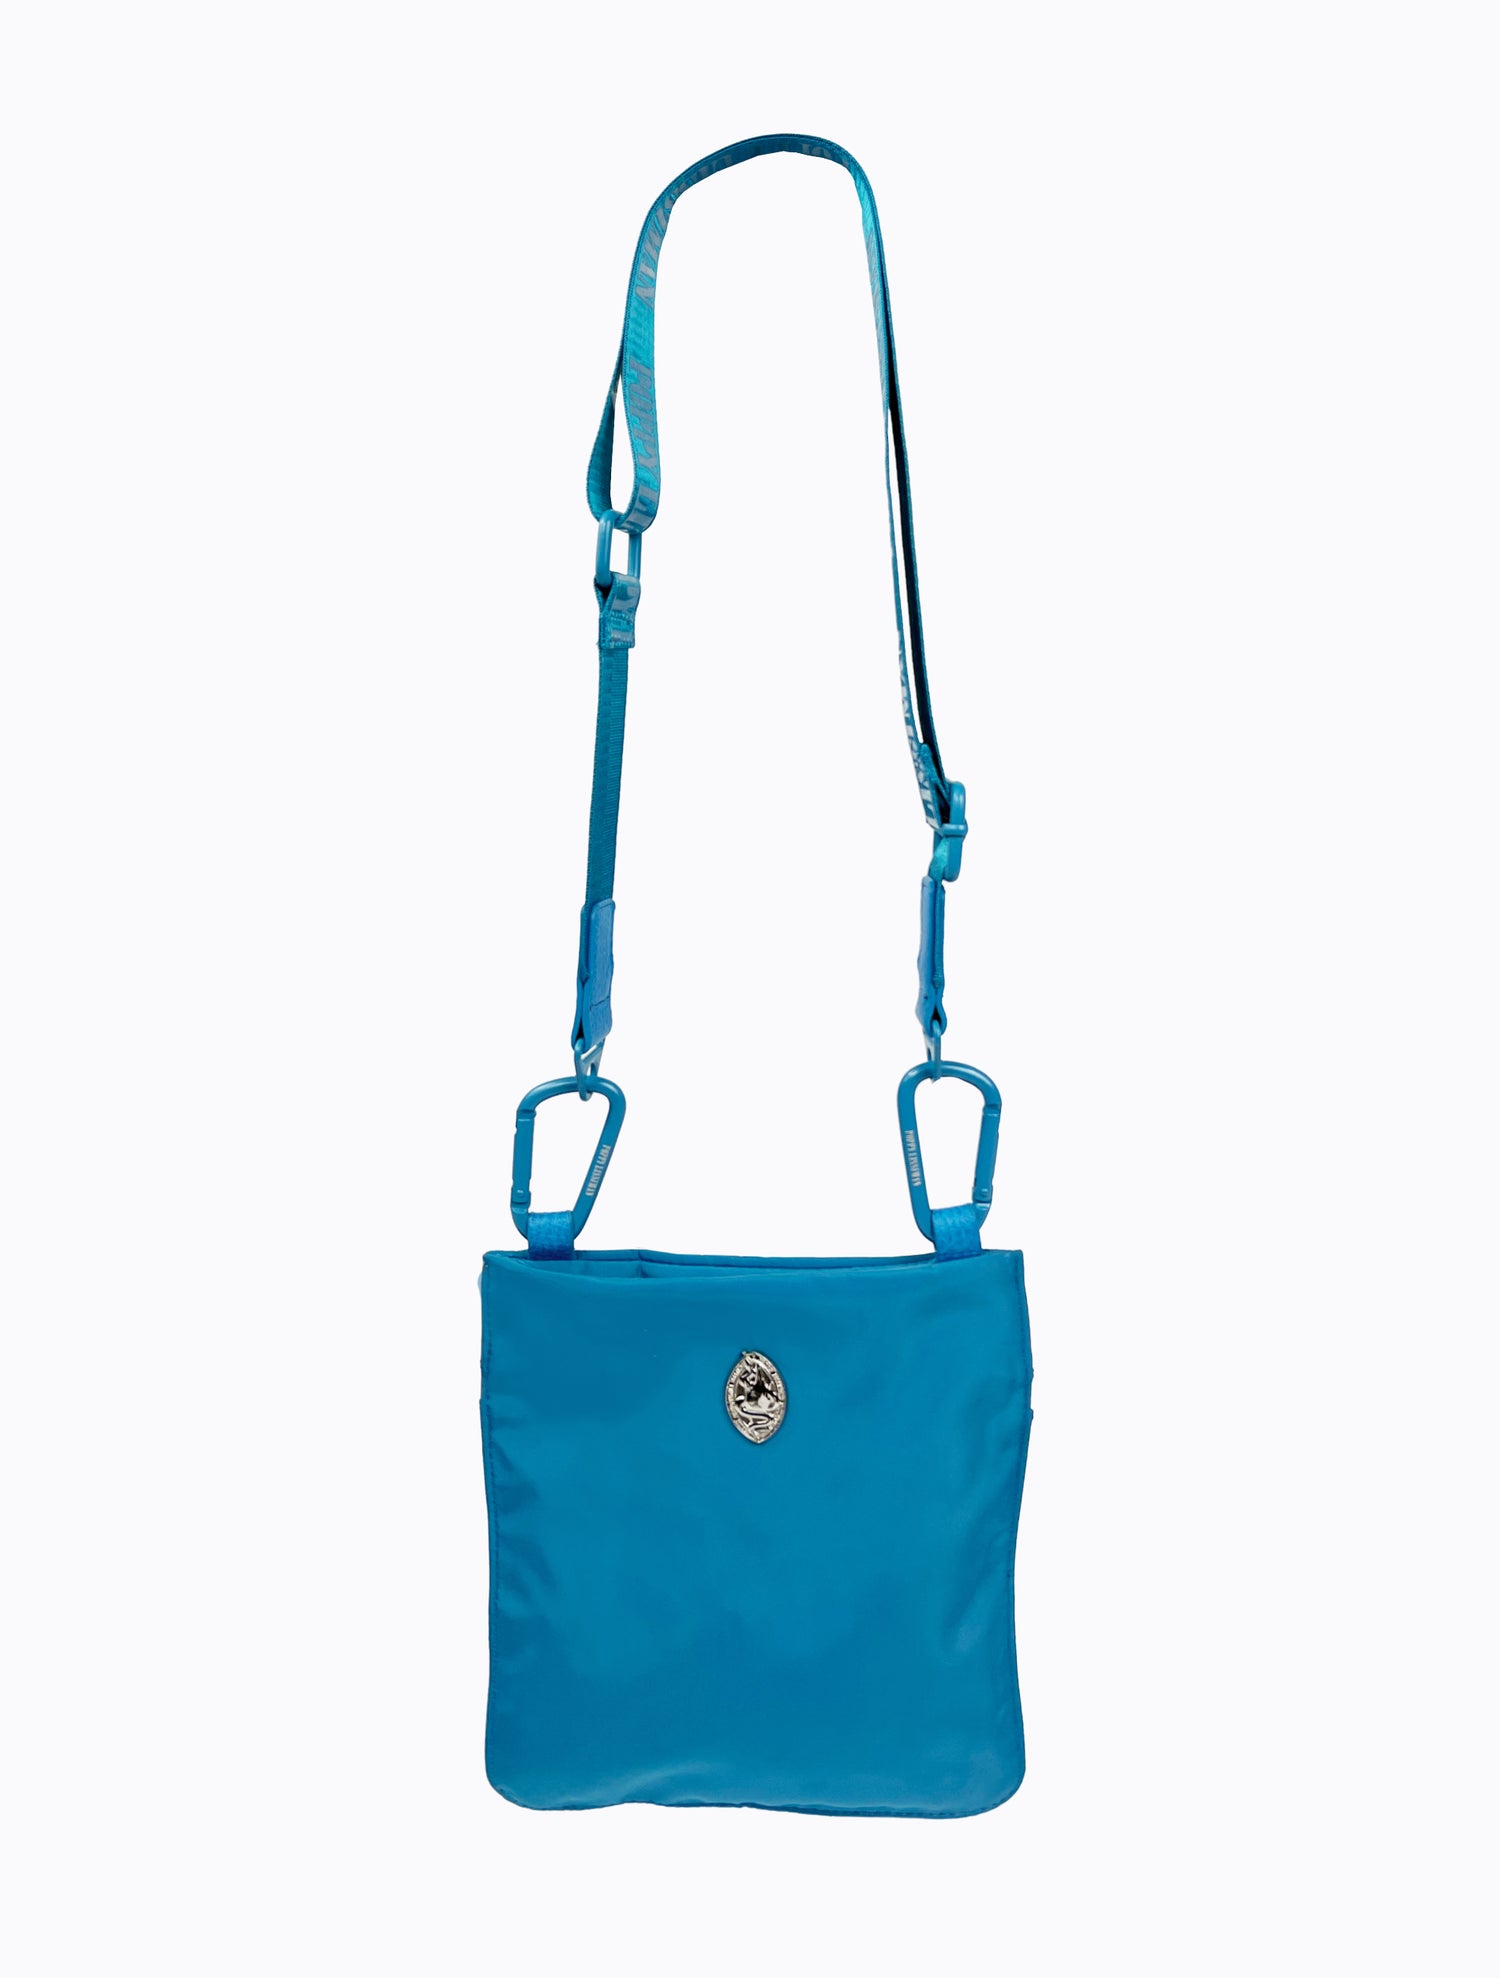 Jacques Shoulder Bag - Cerulean Blue – Poppy Lissiman US